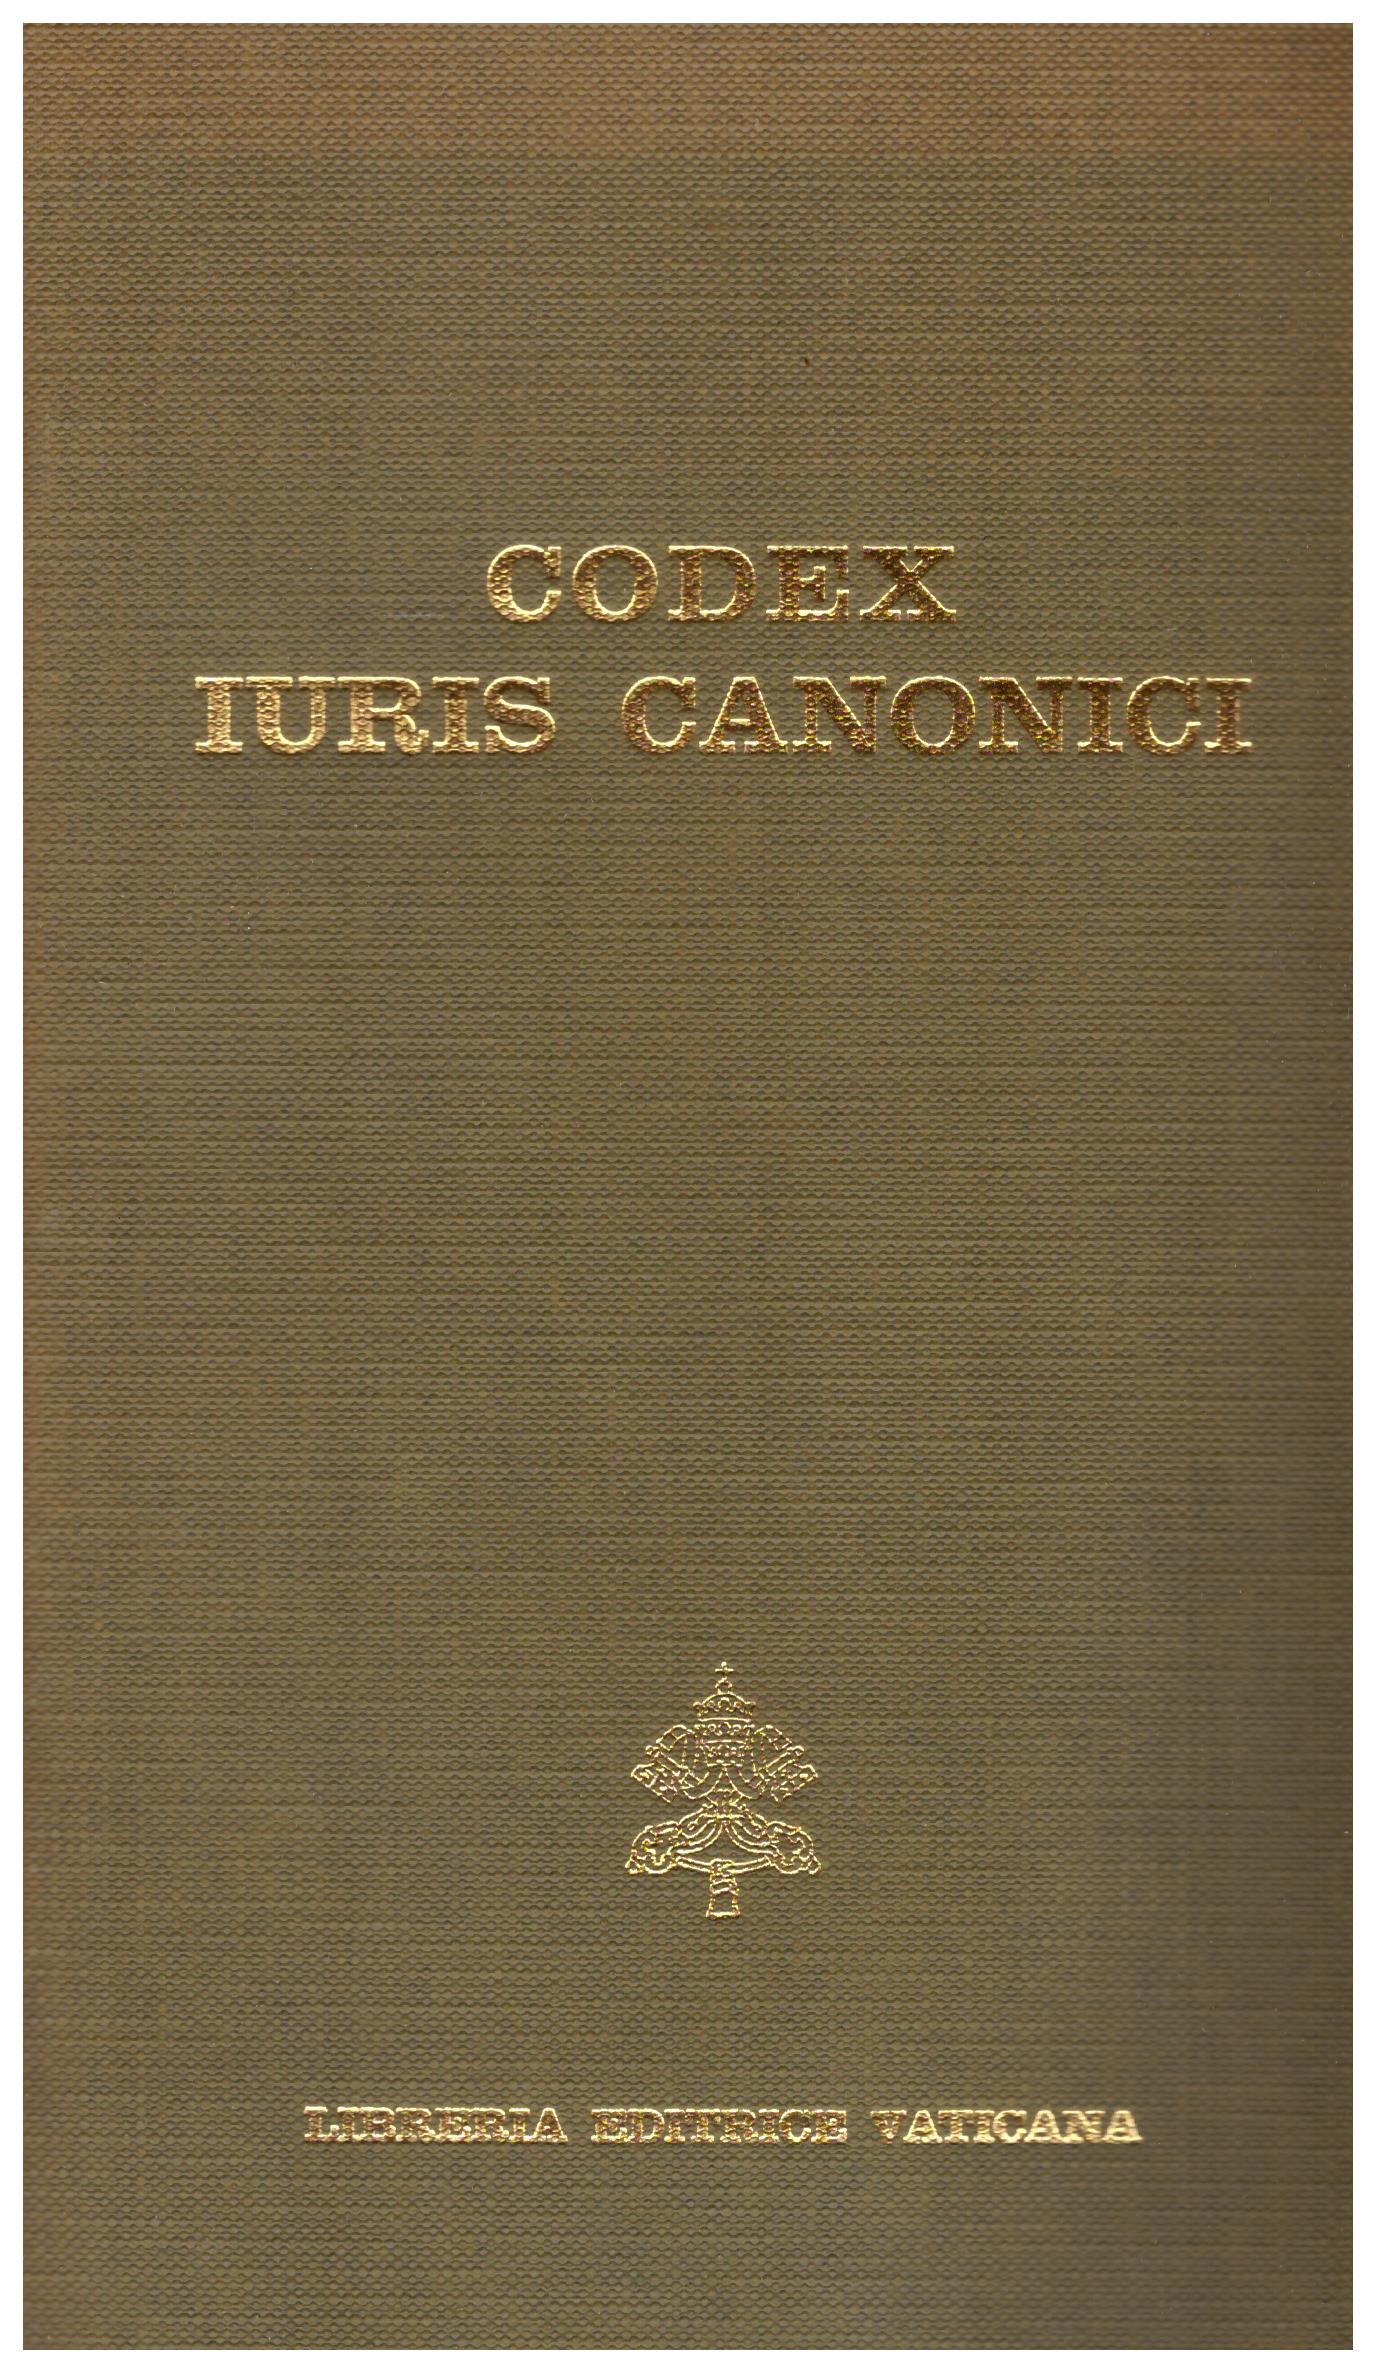 Titolo: Codex iuris canonici Autore : AA.VV. Editore: libreria editrice vaticana